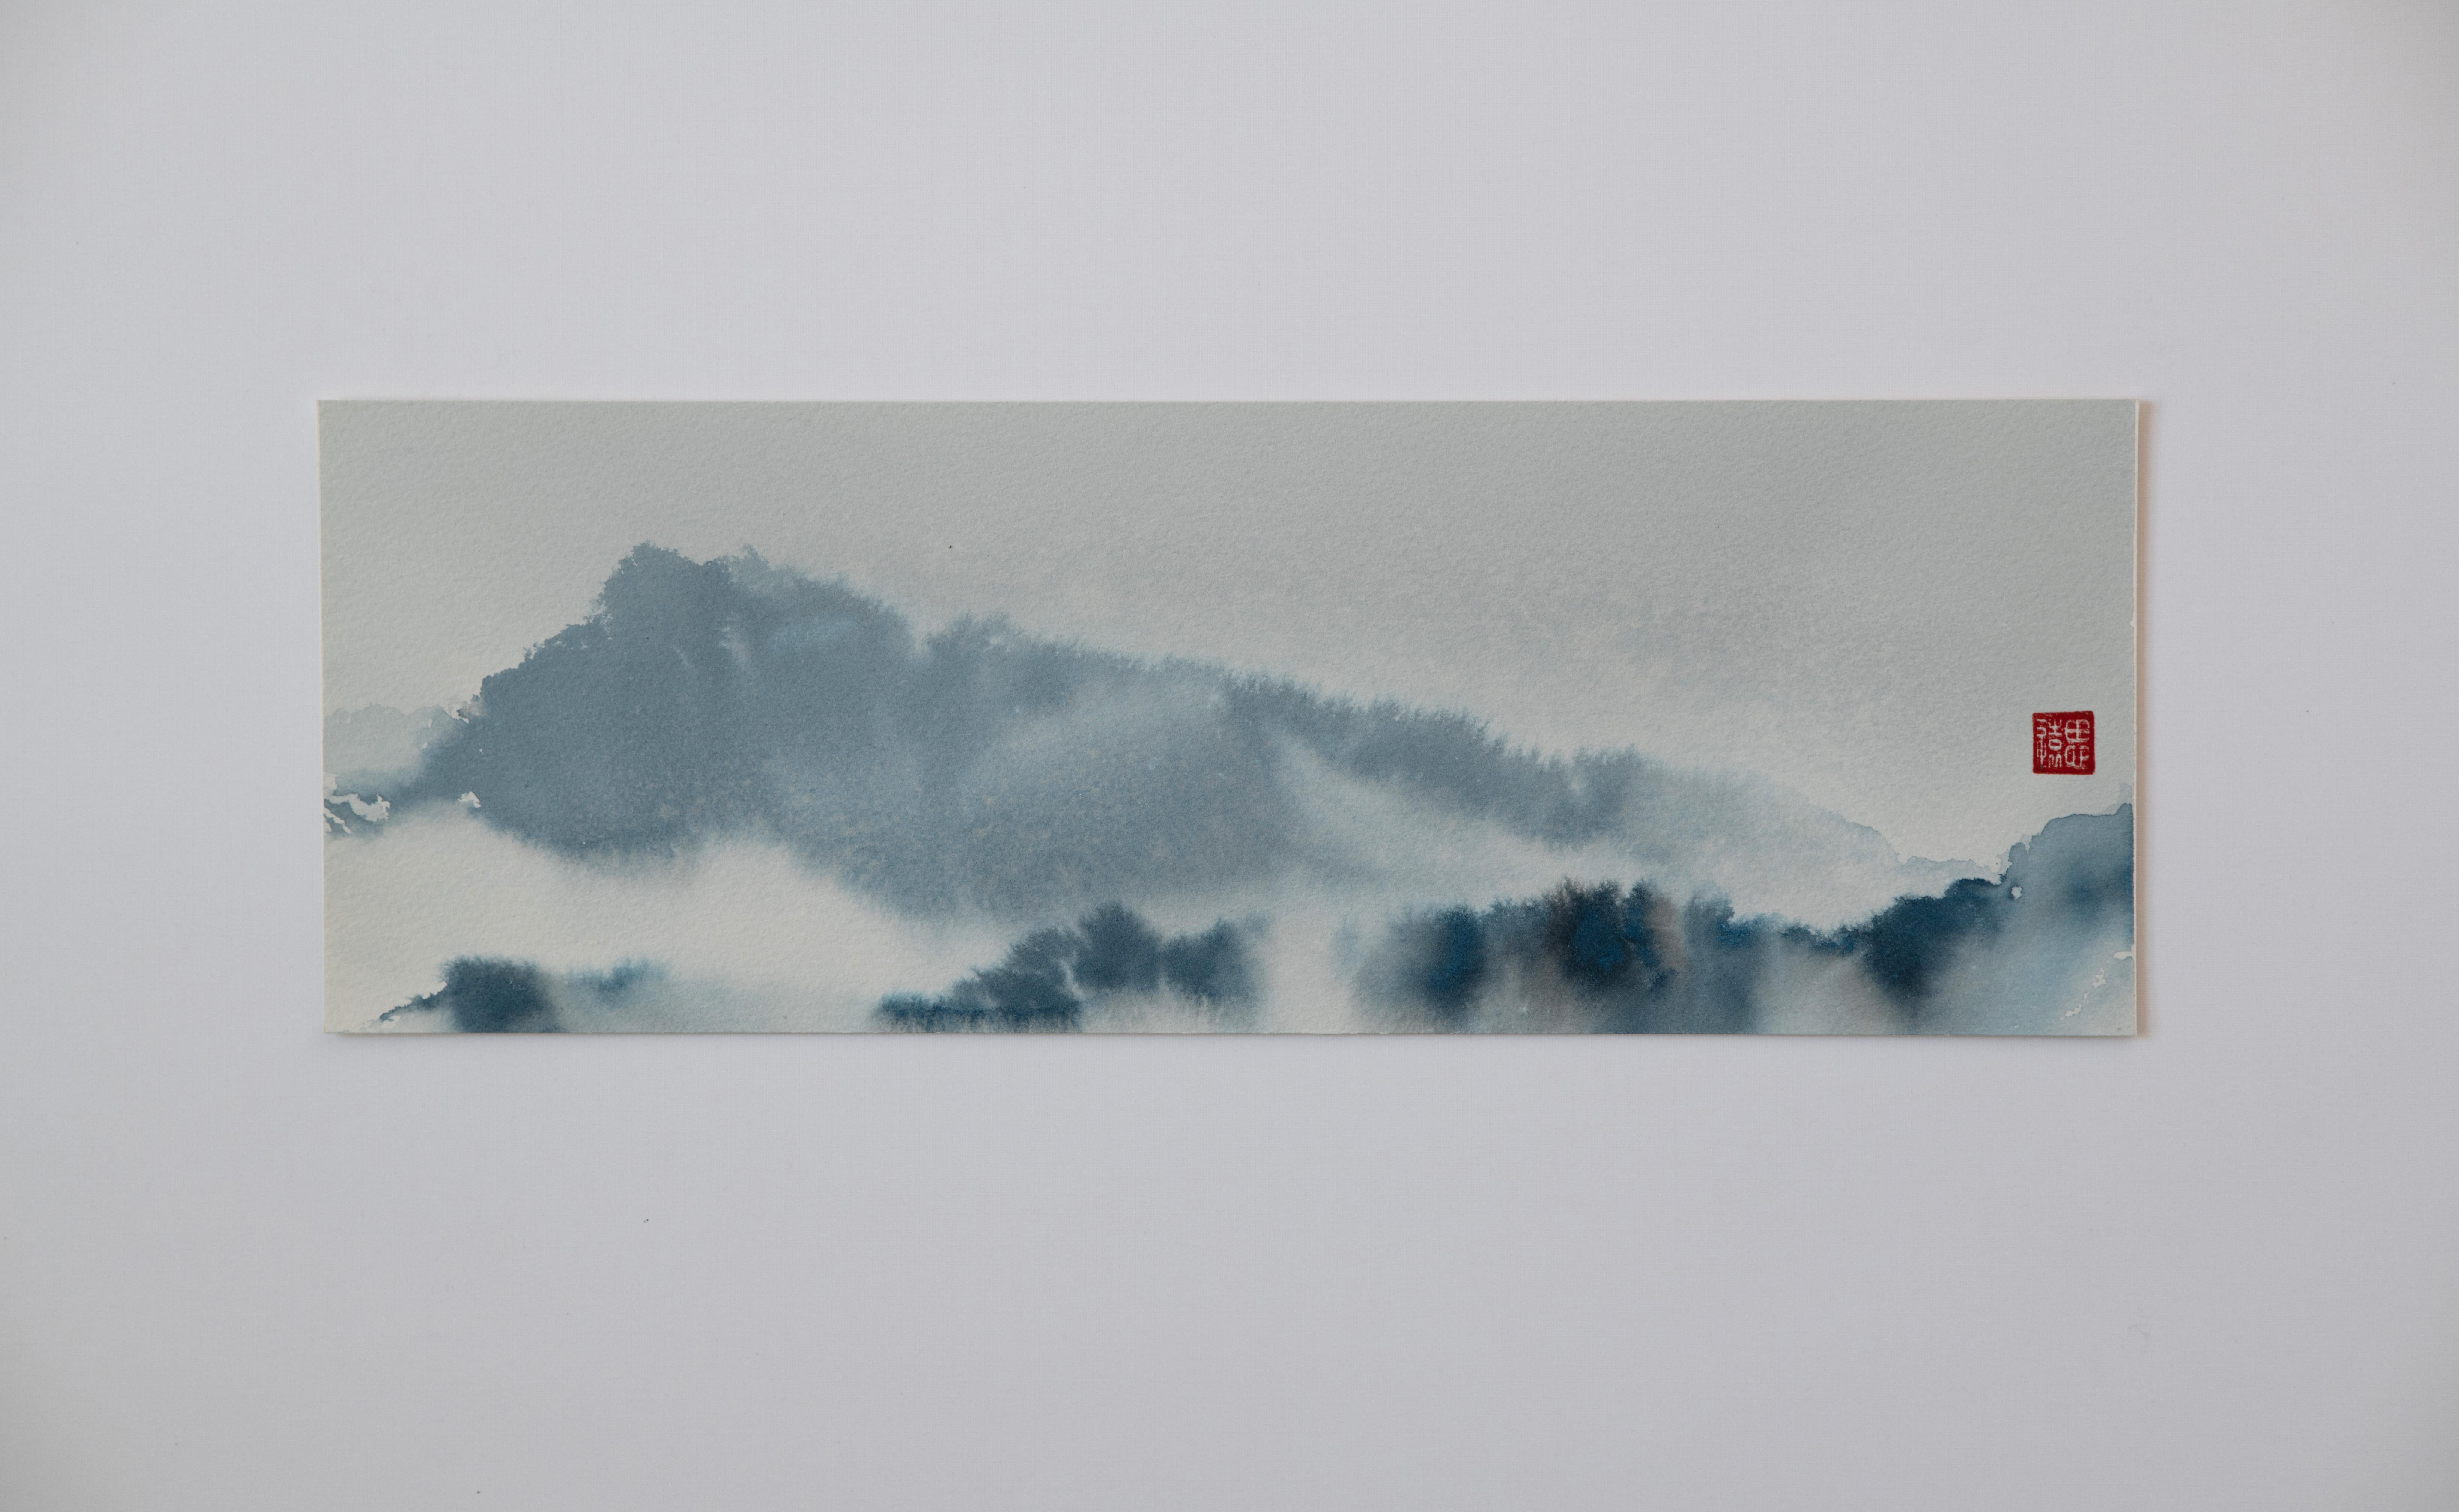 <p>Kommentare des Künstlers<br>In dem Werk des Künstlers Siyuan Ma taucht ein atemberaubendes Bergpanorama aus dem Nebel auf. Die abstrakte Bildsprache entführt den Betrachter in eine traumhafte Welt aus sanft mäandernden Farben. Kontinuierliche